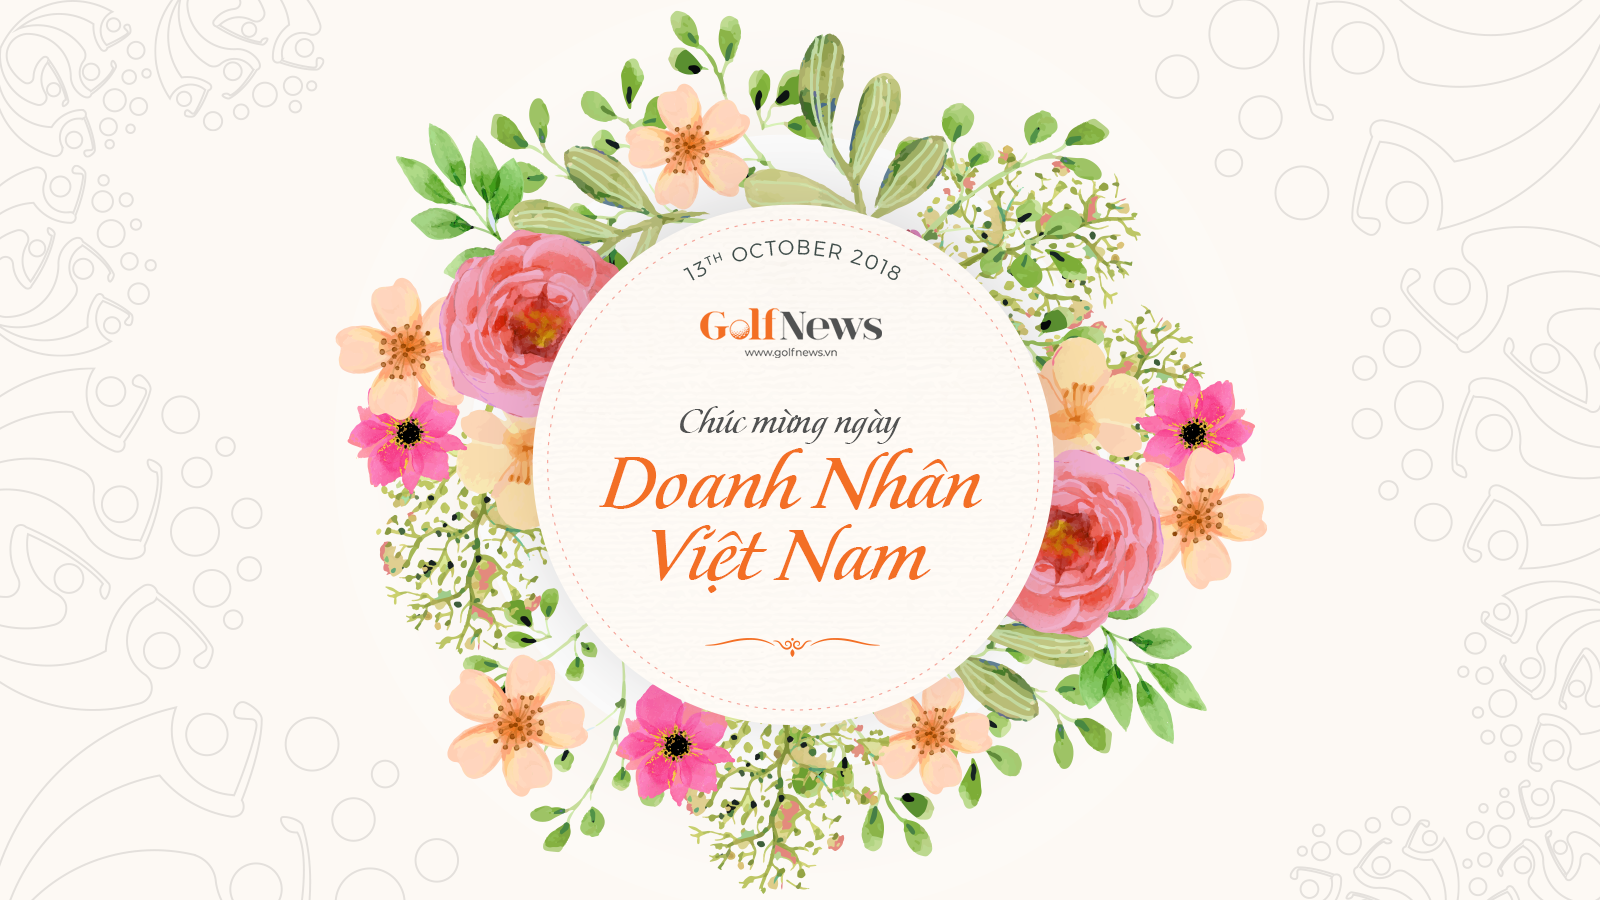 GolfNews.vn mừng ngày Doanh nhân Việt Nam 13/10